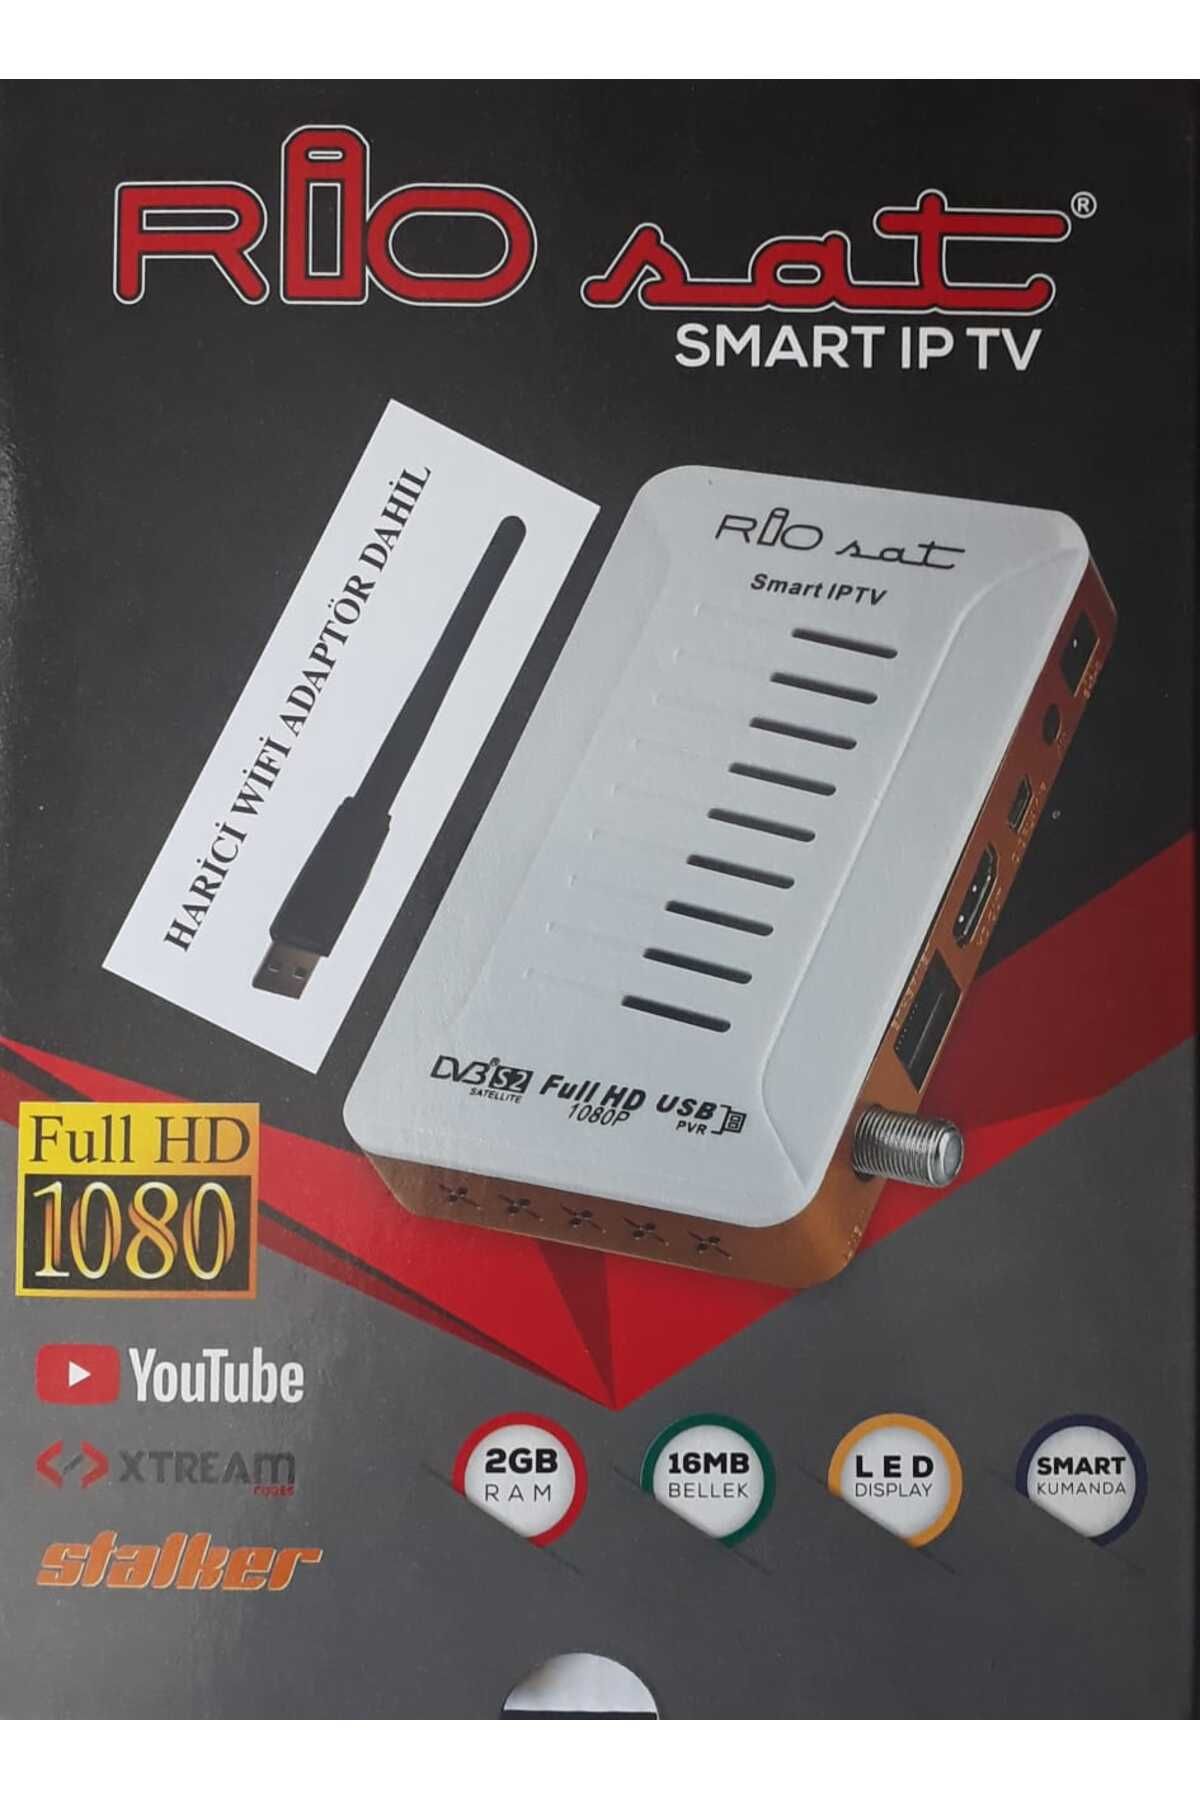 RIOSAT Smart IPTV